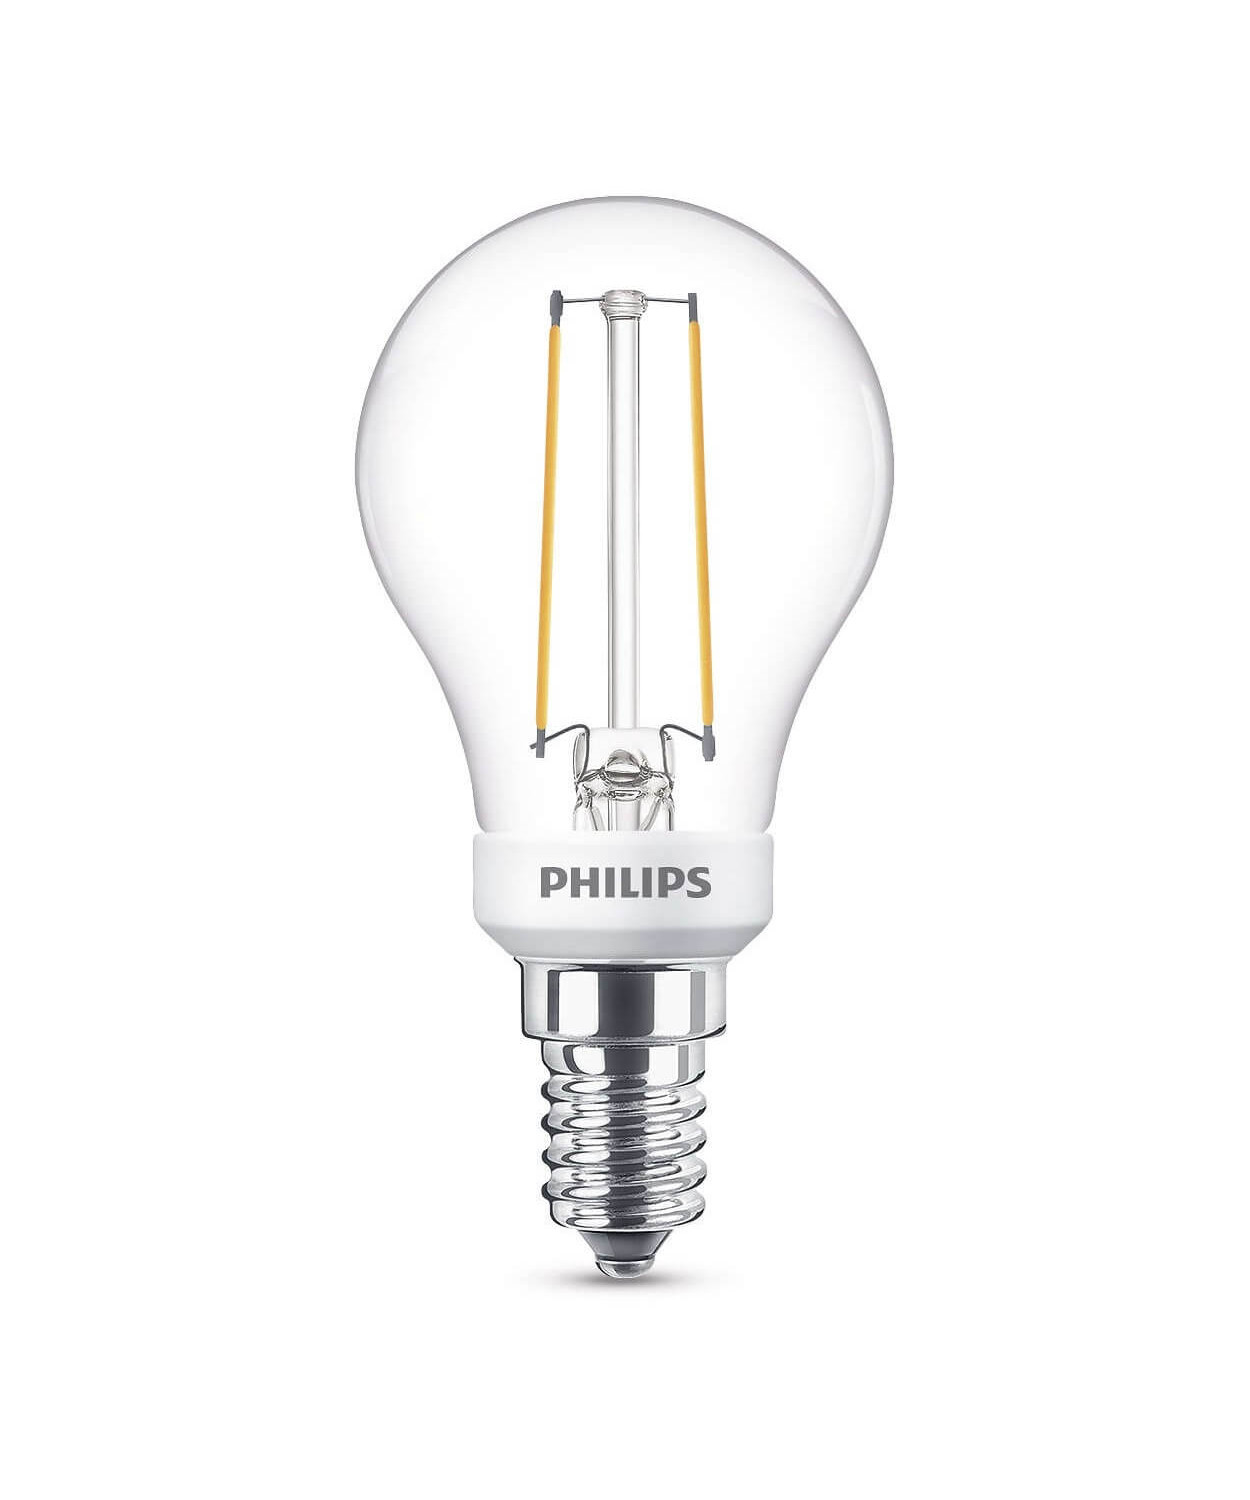 Zdjęcia - Żarówka Philips   LED 3W Szklana Korona  Ściemnialna E14 (250lm)